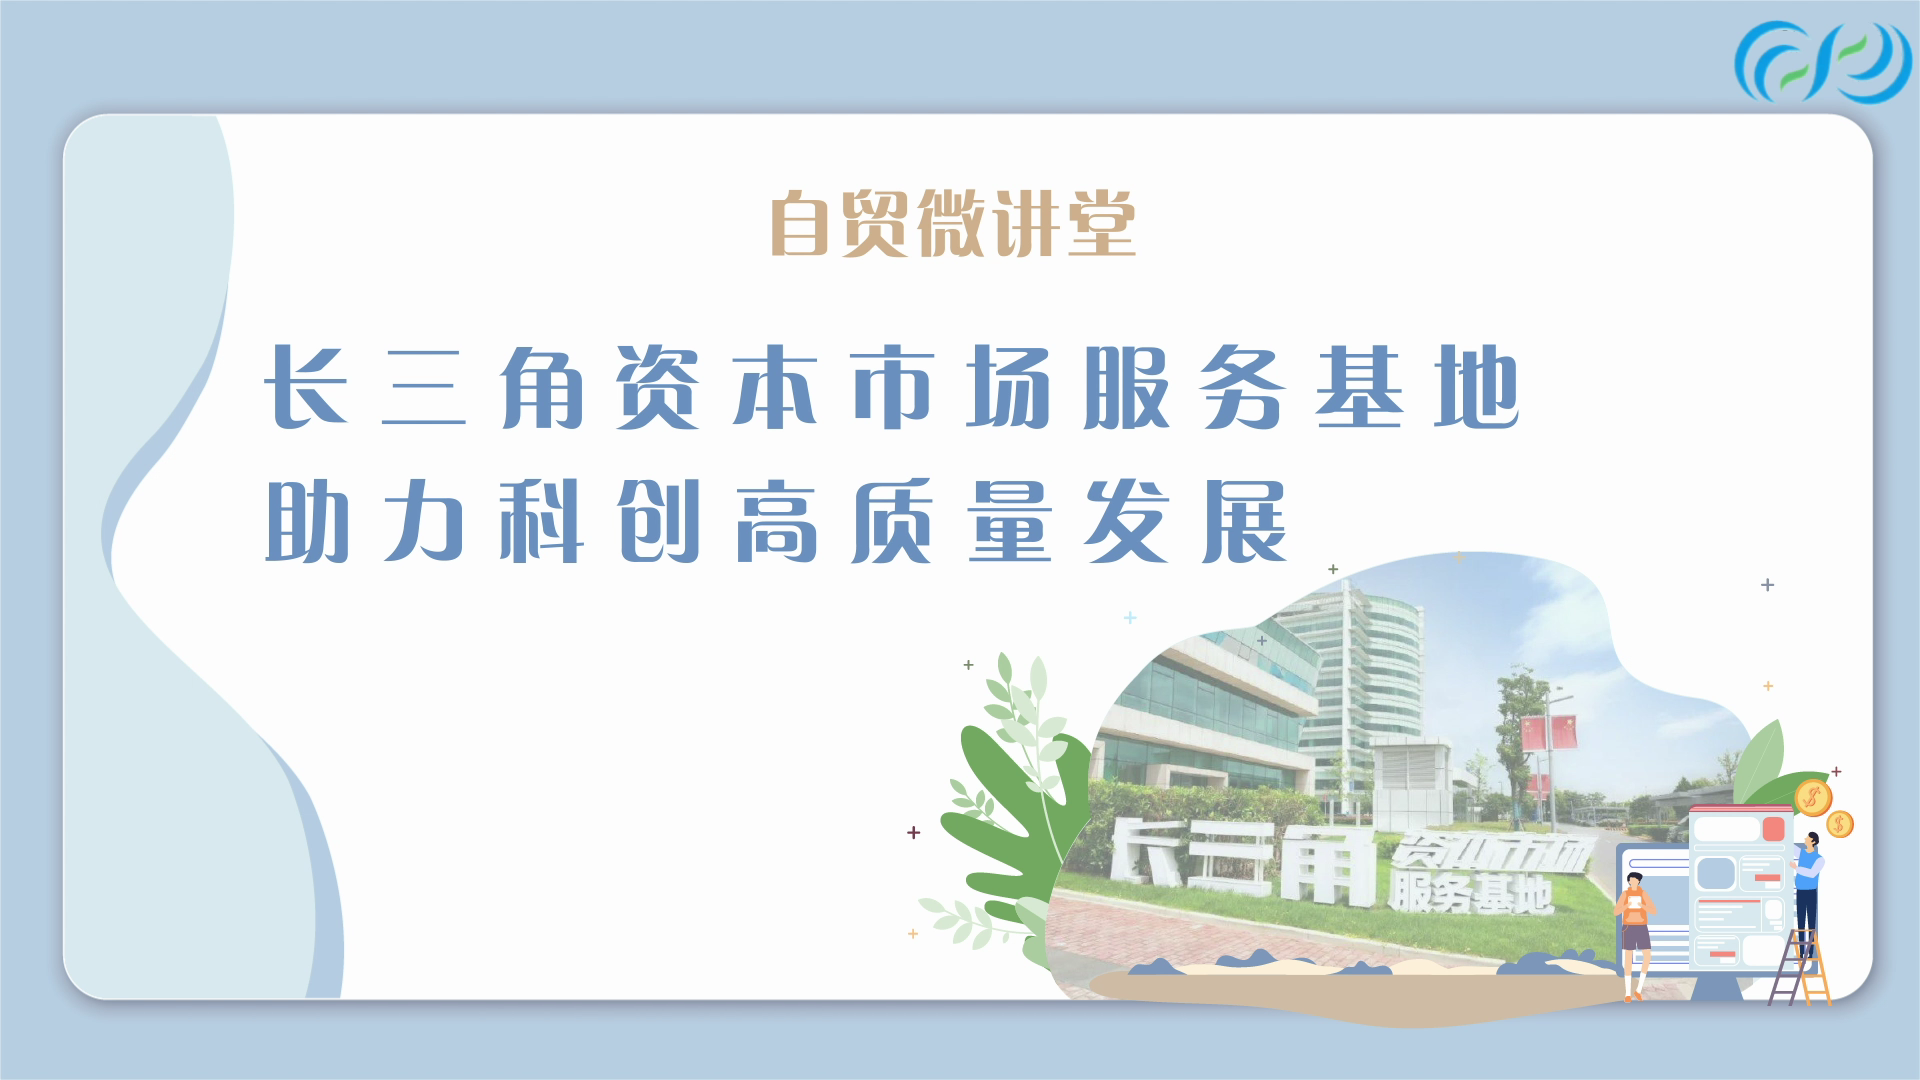 Mini-lecture: the Yangtze River Delta Capital Market Service Base